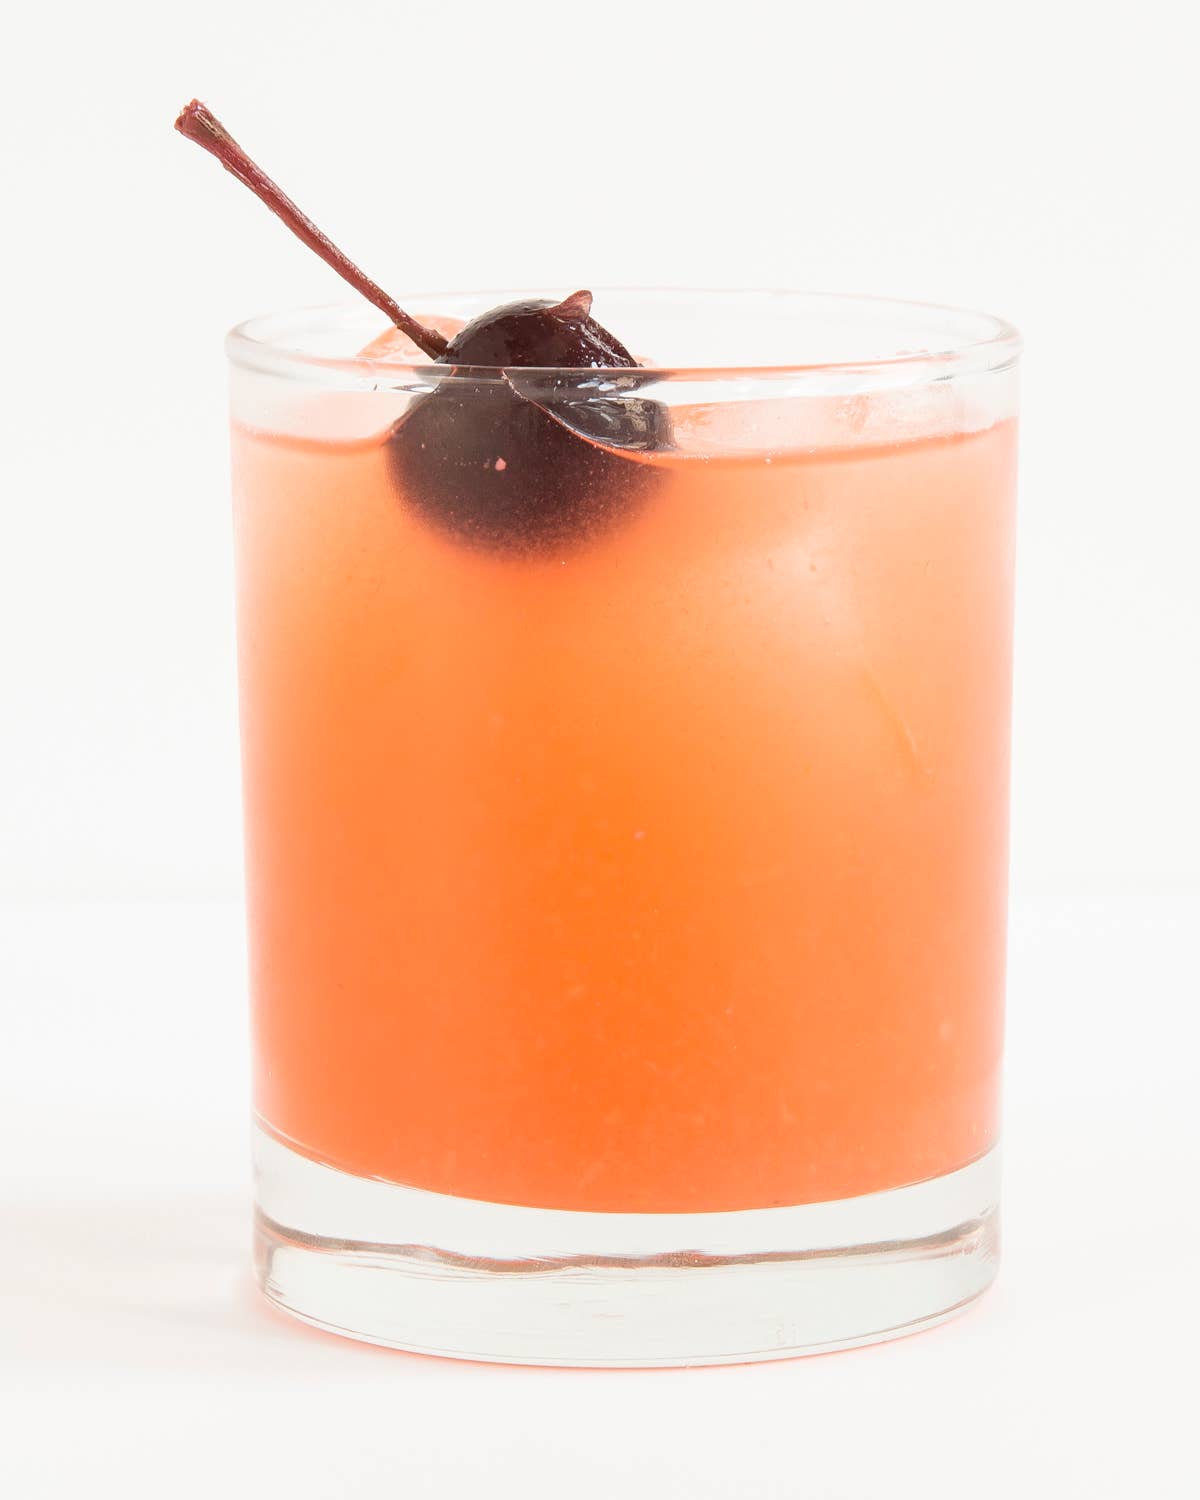 Bermuda Hundred Cocktail